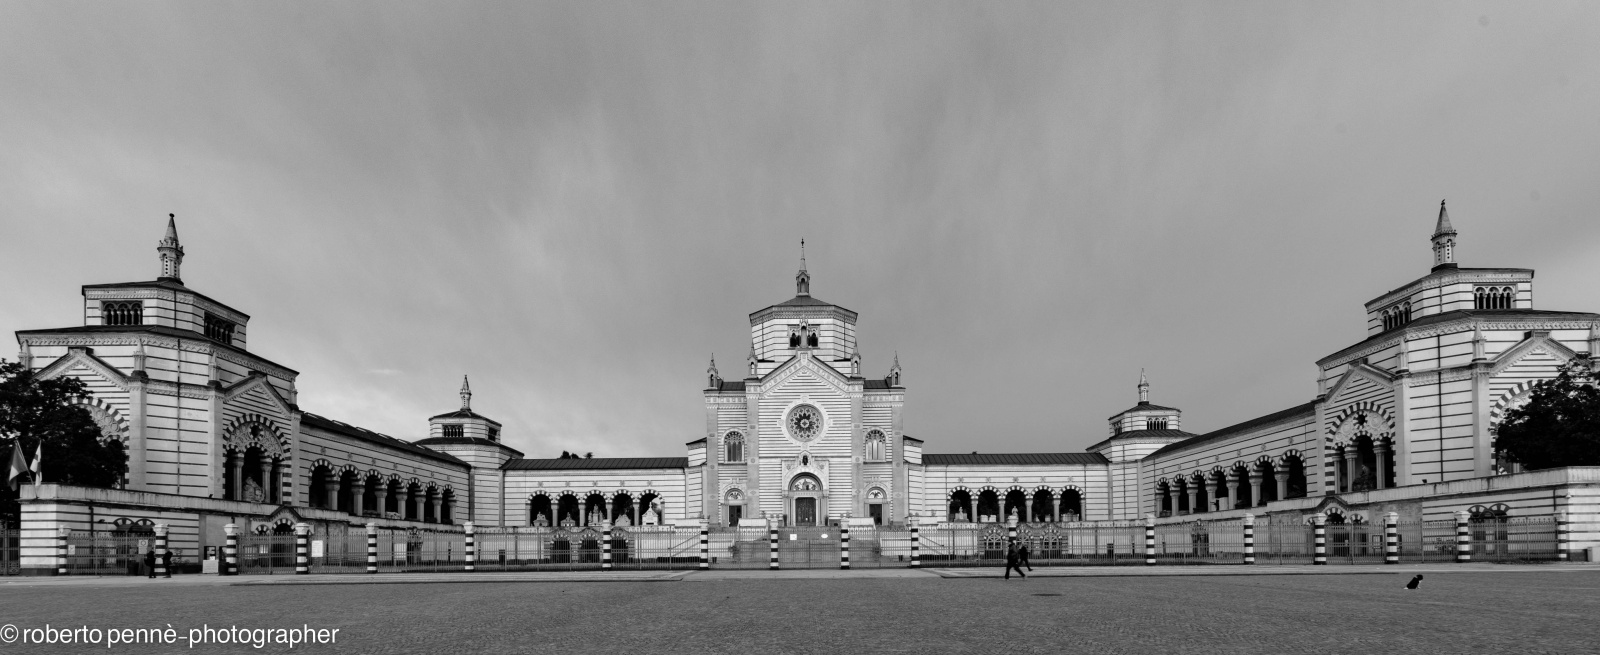 Viaggio nella memoria - Cimitero Monumentale - Milano